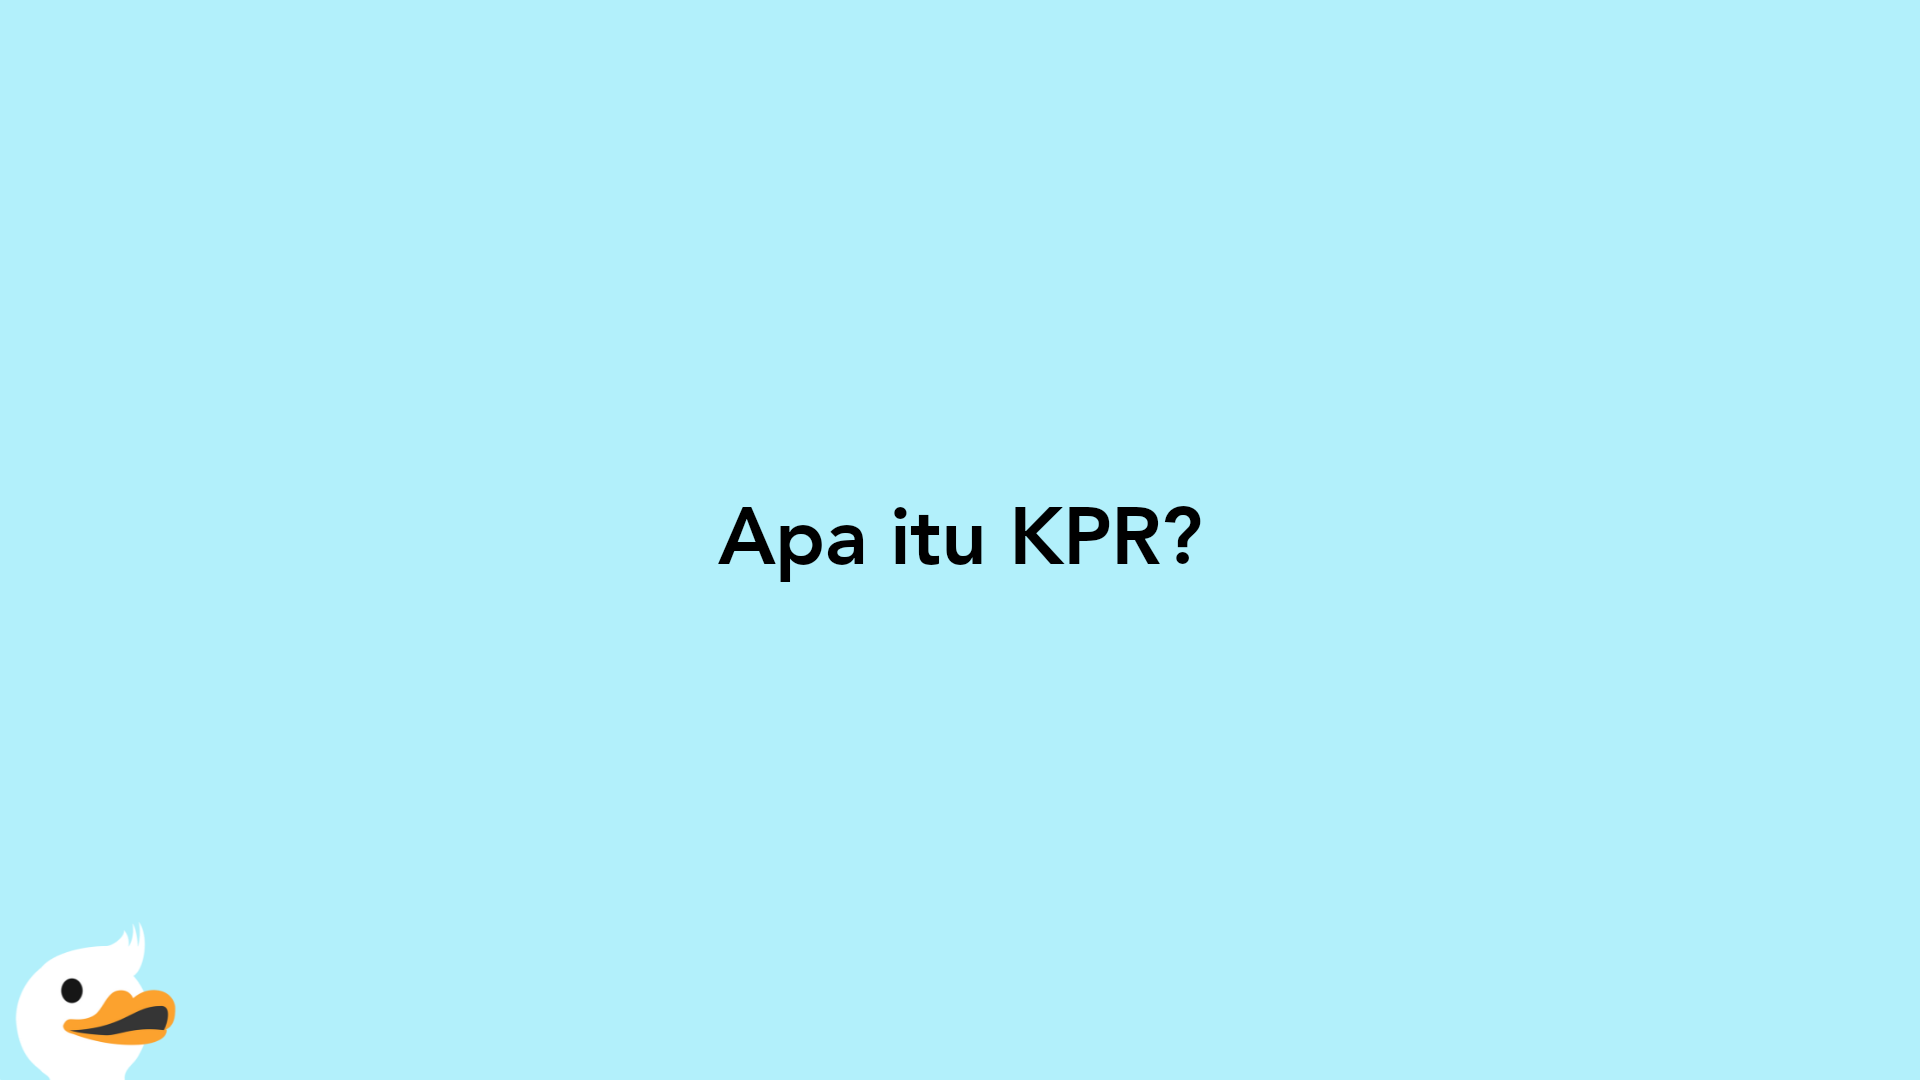 Apa itu KPR?